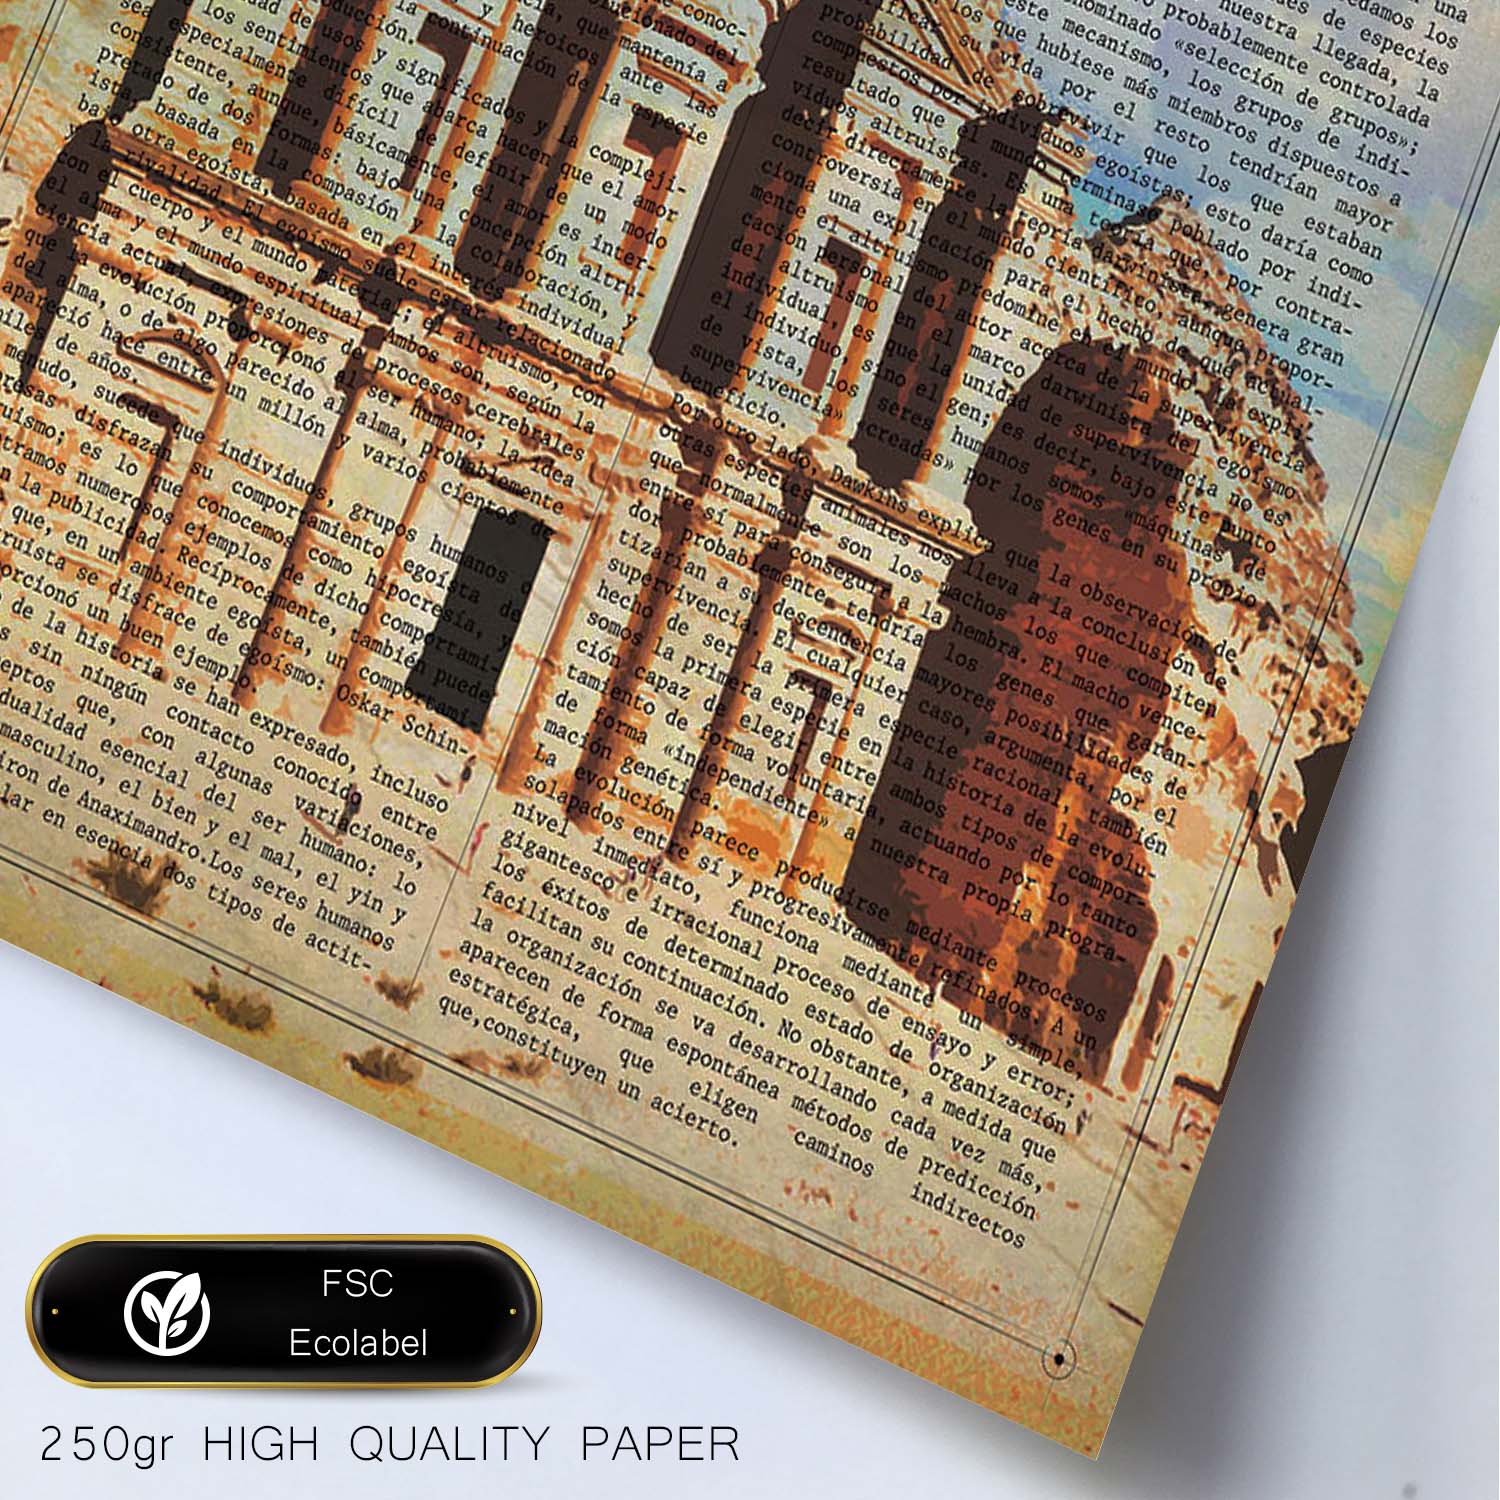 Poster de Petra (Jordania). Láminas e ilustraciones de ciudades del mundo y monumentos famosos.-Artwork-Nacnic-Nacnic Estudio SL